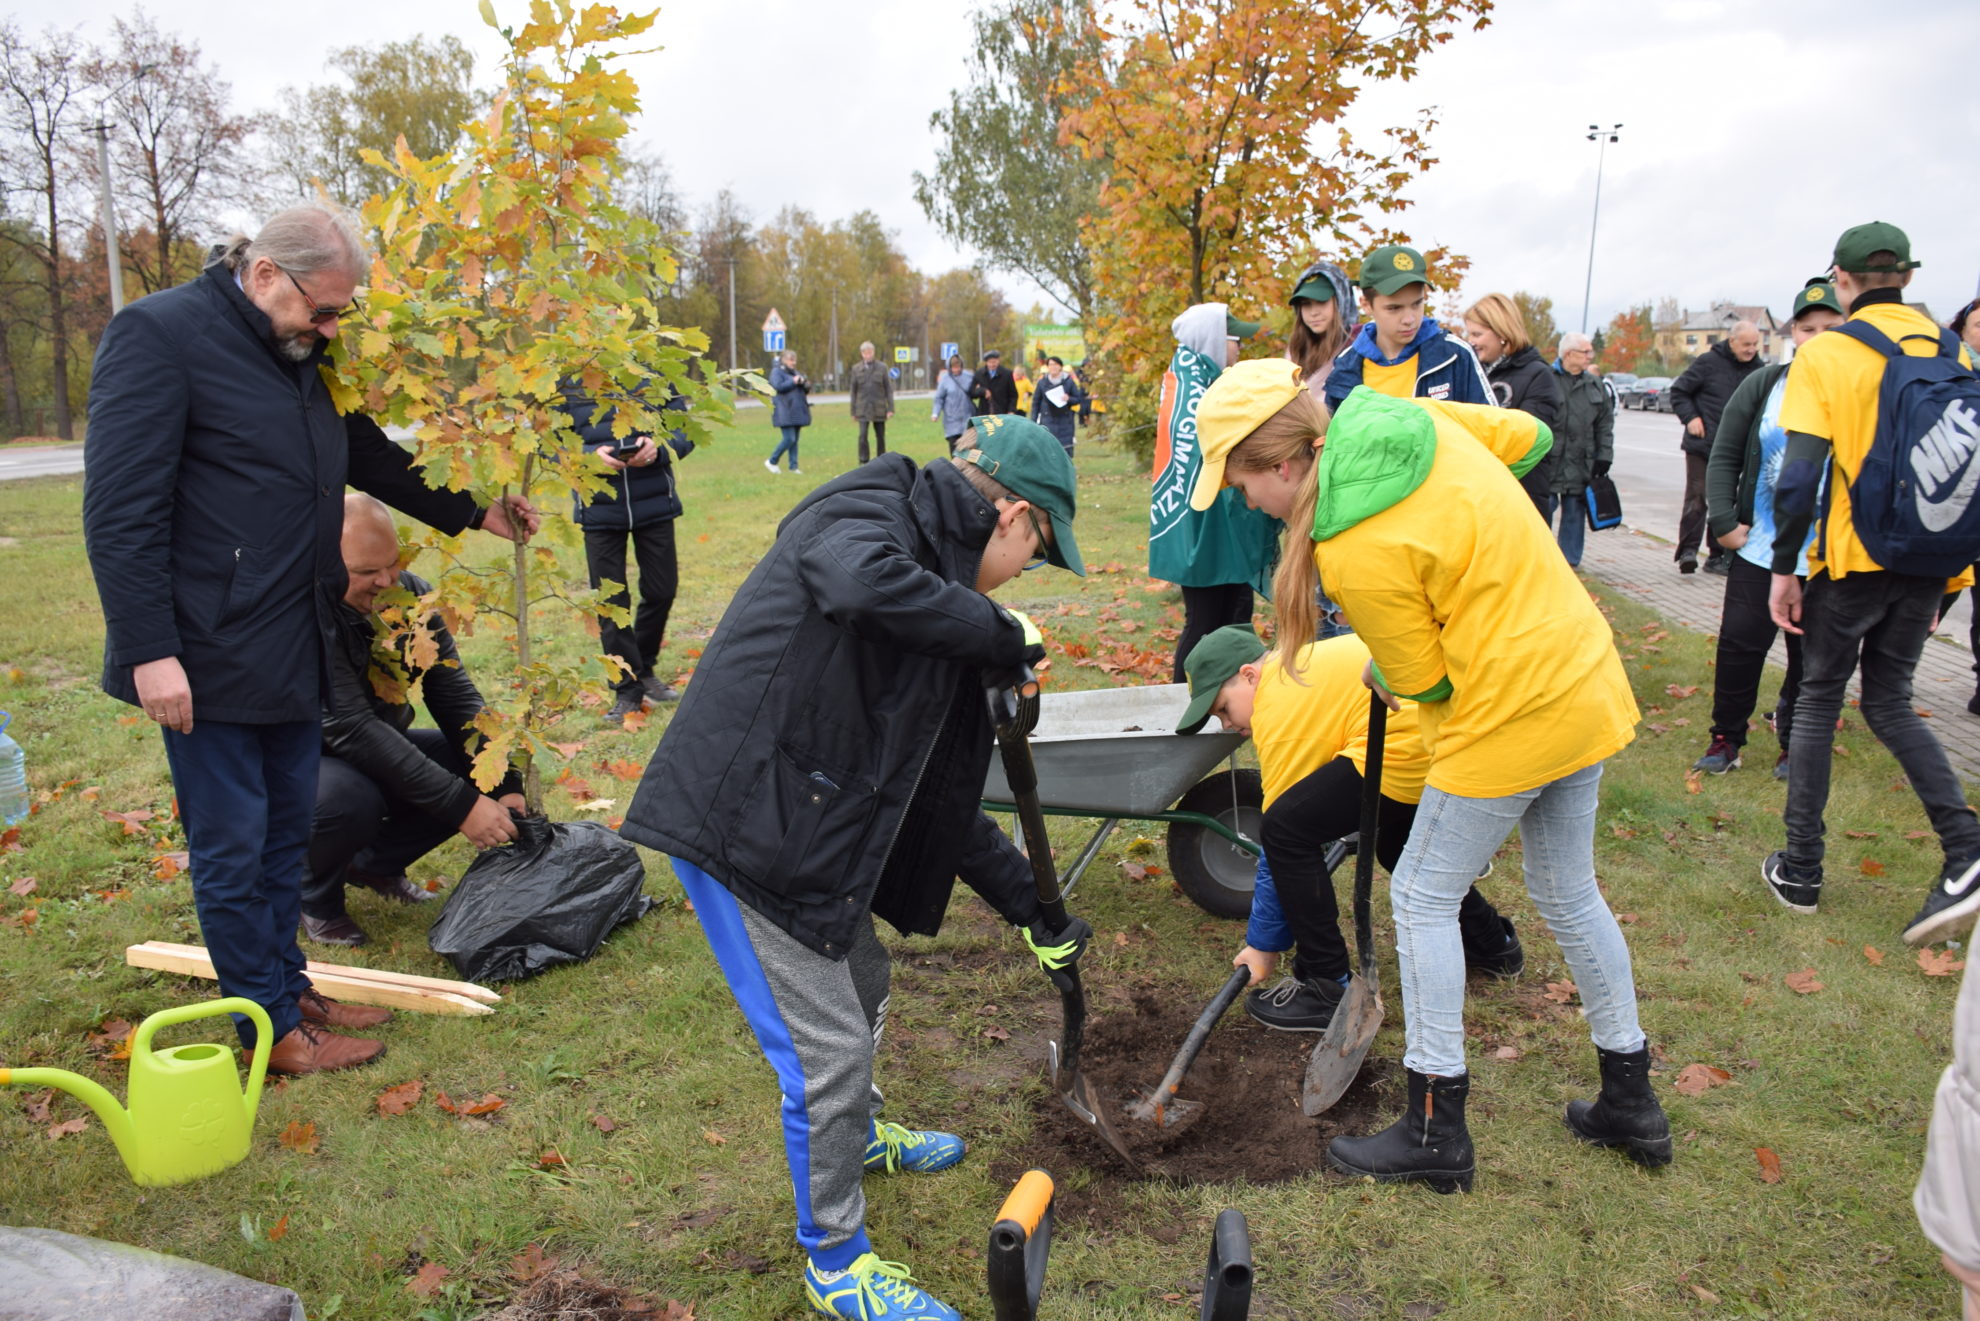 Šiandien Panevėžio miesto meras Rytis Račkauskas dalyvavo Rožyno bendruomenės organizuotoje ąžuolyno sodinimo šventėje.